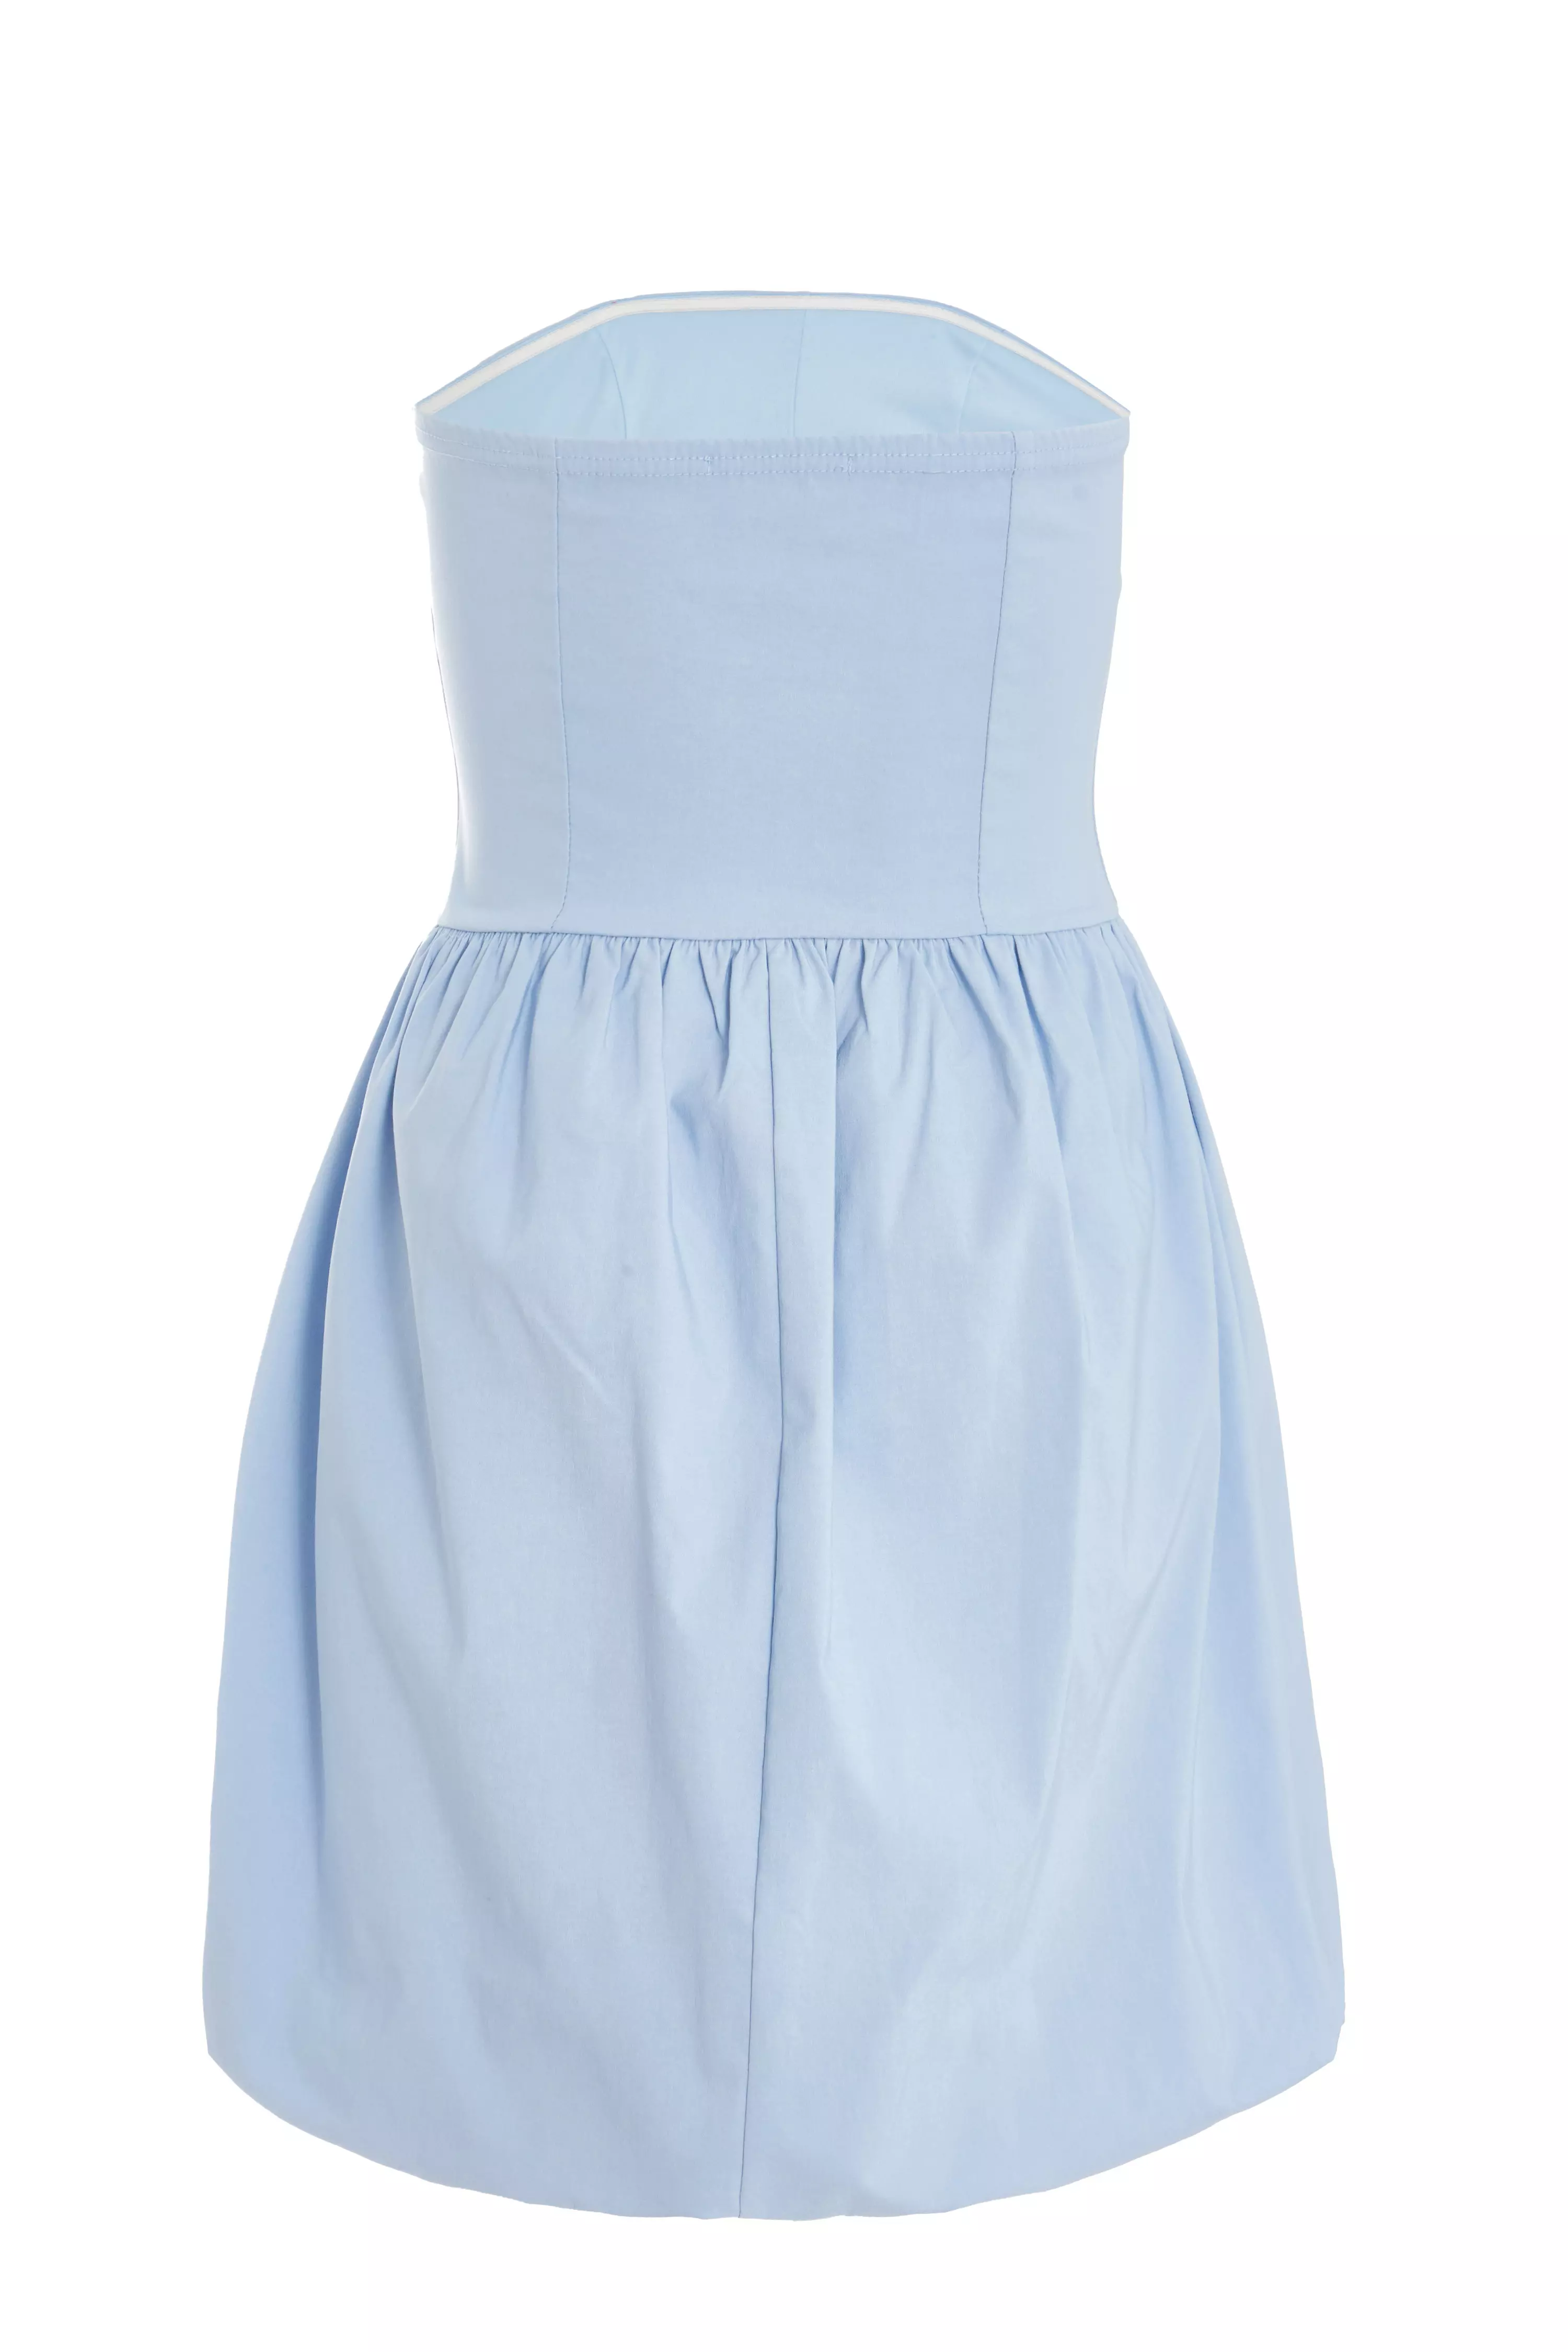 Light Blue Puff Ball Mini Dress